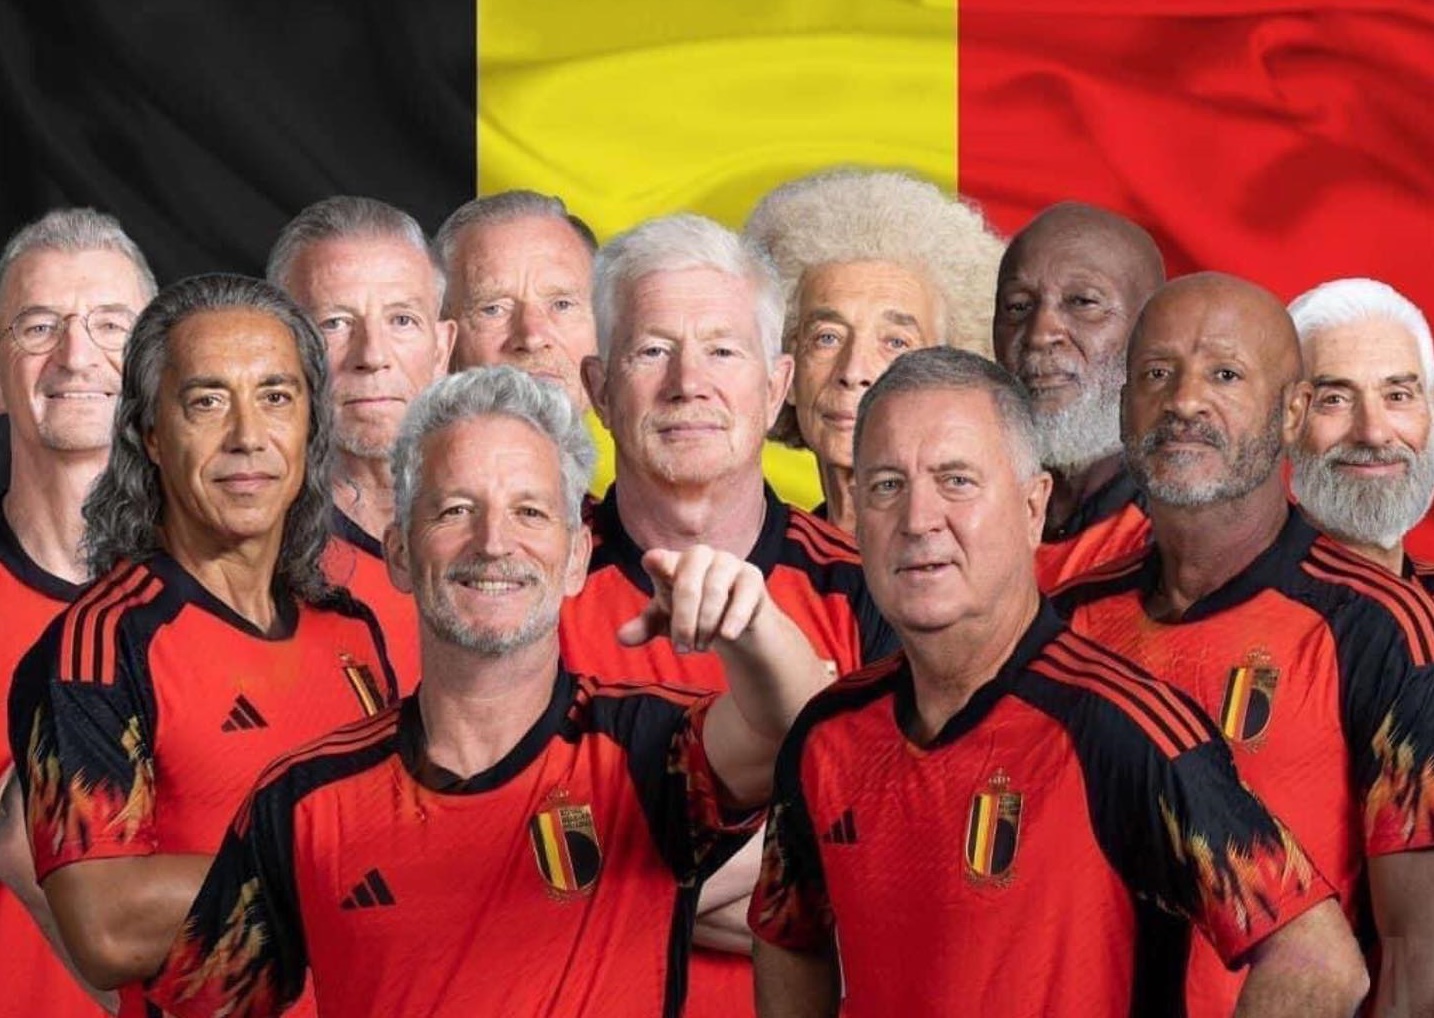 Bỉ vs Ma Rốc: Trận đấu giữa Bỉ và Ma Rốc hứa hẹn sẽ là một cuộc chiến hấp dẫn. Với lực lượng mạnh mẽ, cả hai đội bóng đều sẽ cống hiến những pha bóng đẹp mắt cho người xem. Hãy cùng đón xem trận đấu gay cấn này để cổ vũ cho đội tuyển mình yêu thích.